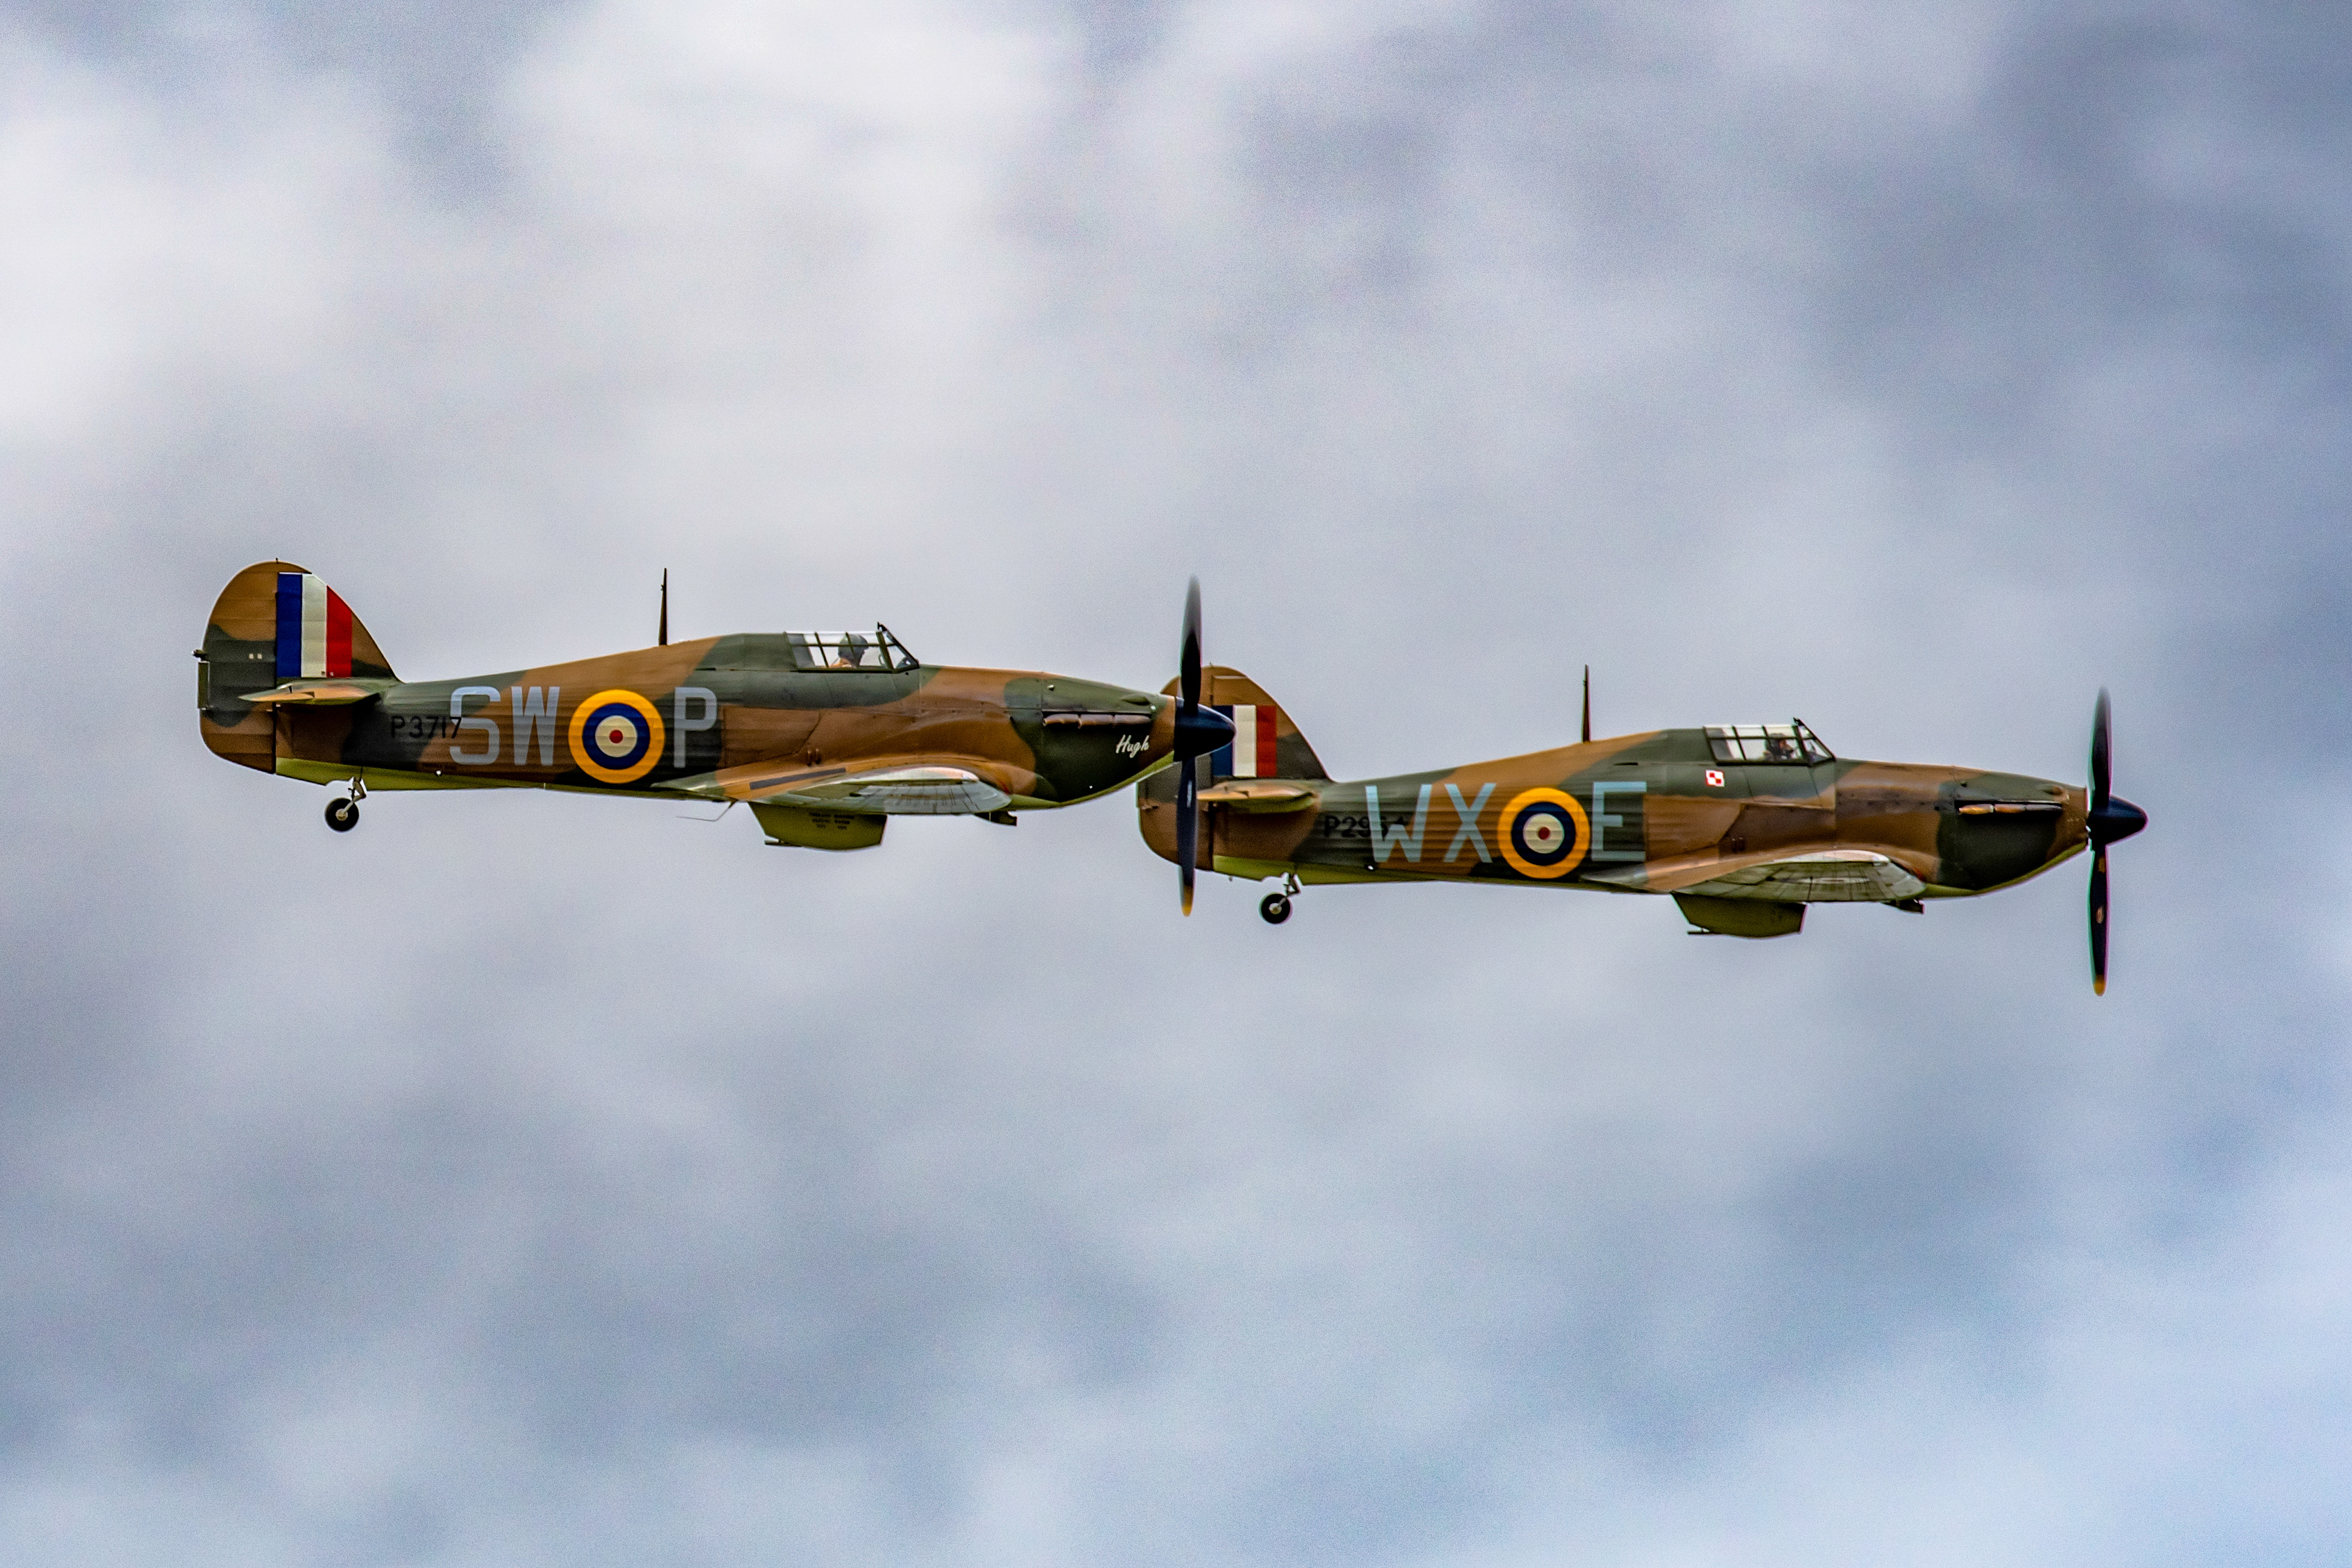 Spitfires waren ebenfalls am Himmel, um die Menge zu unterhalten